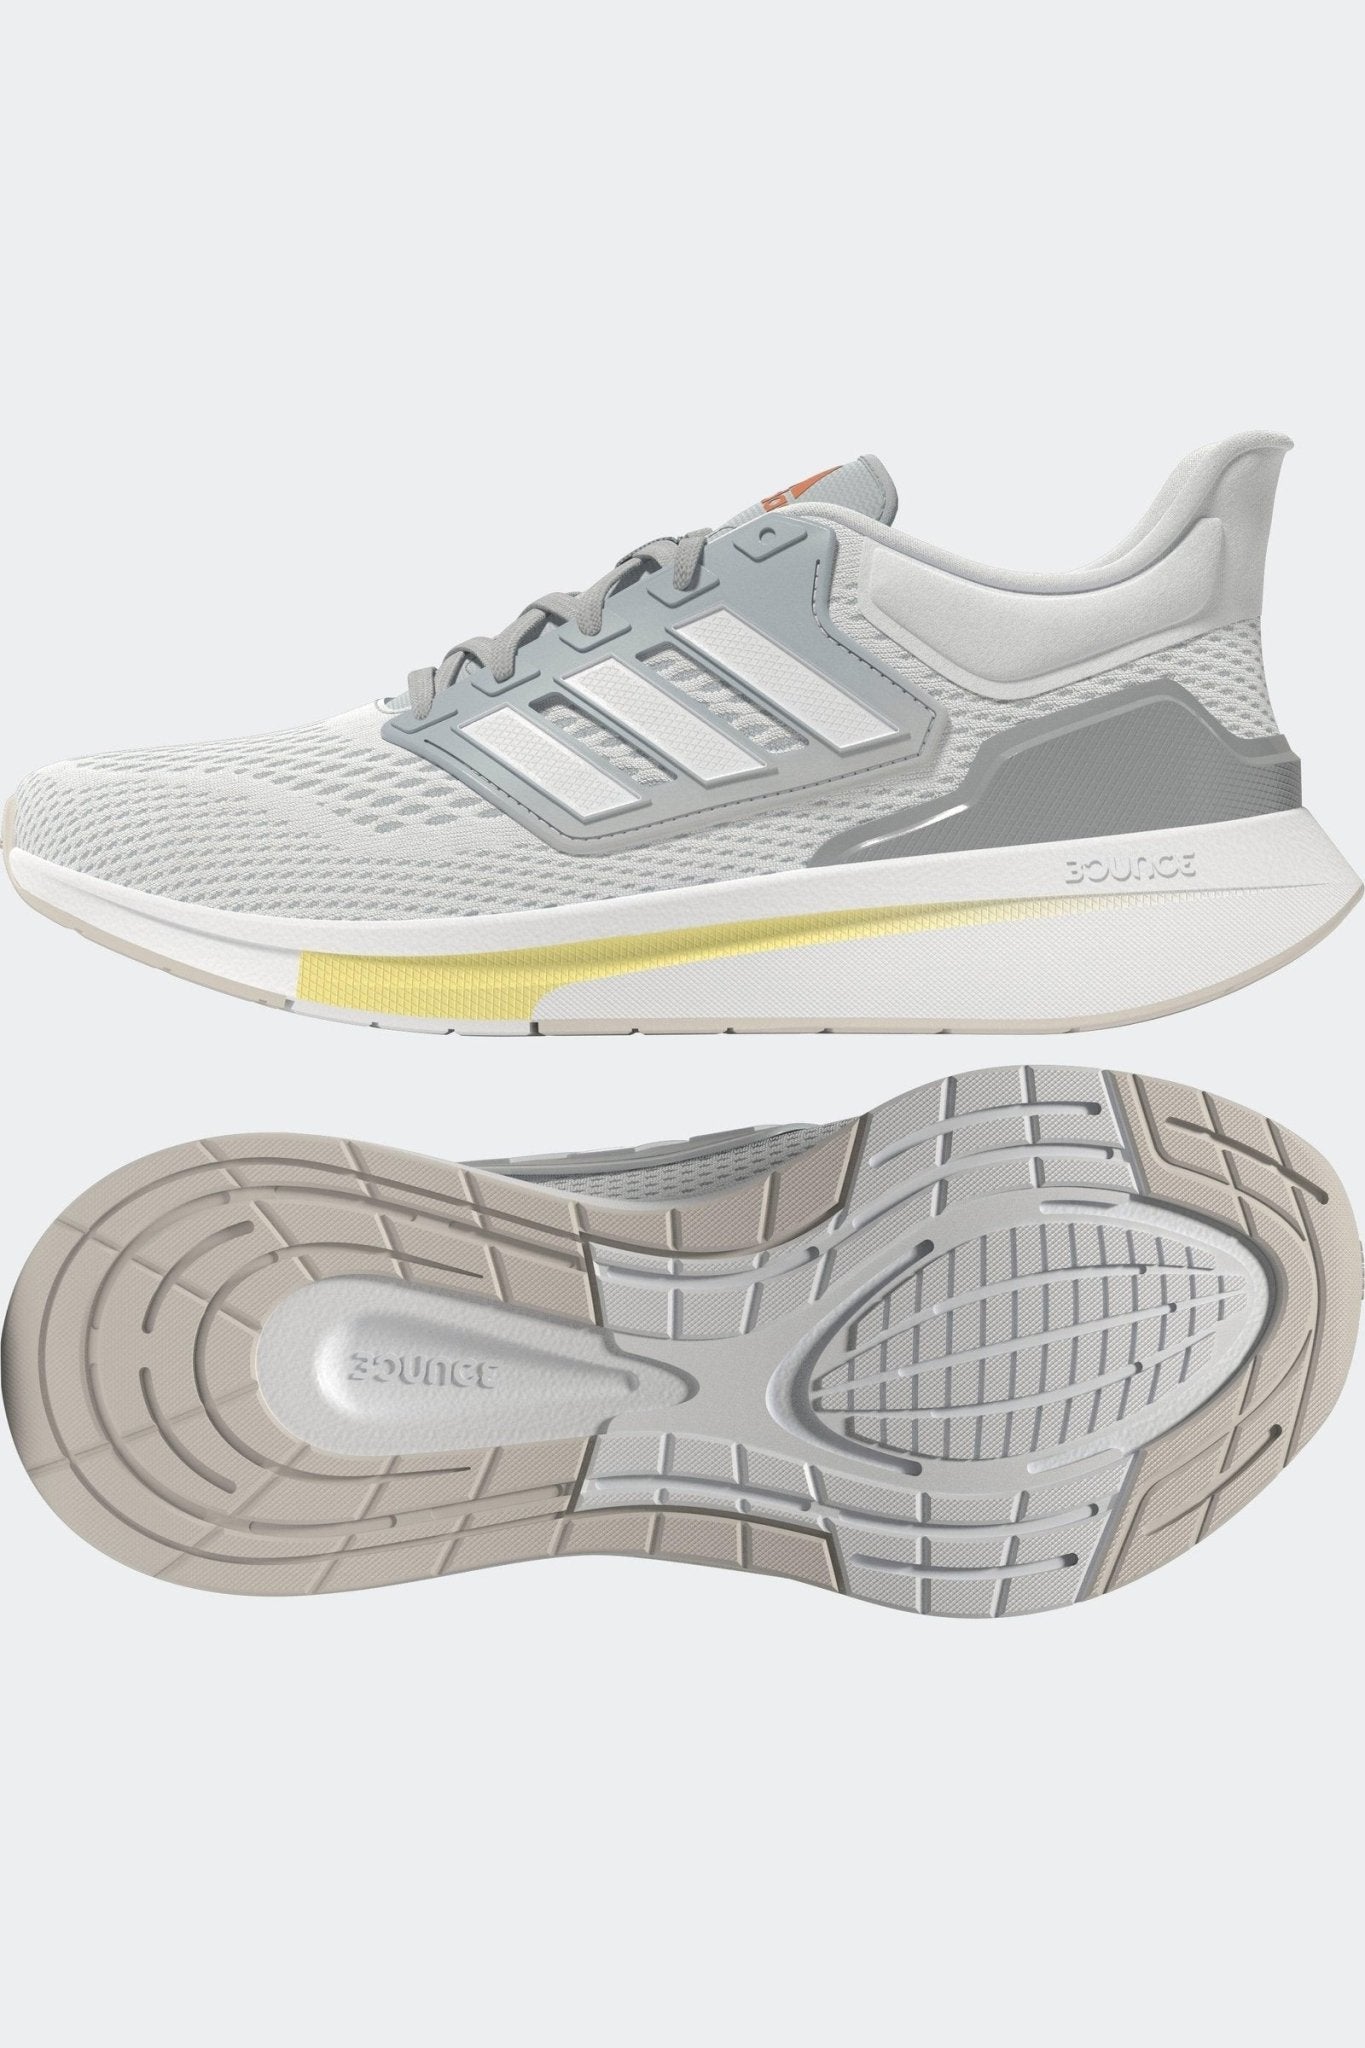 ADIDAS - נעלי ספורט לנשים EQ21 RUN בצבע אפור - MASHBIR//365